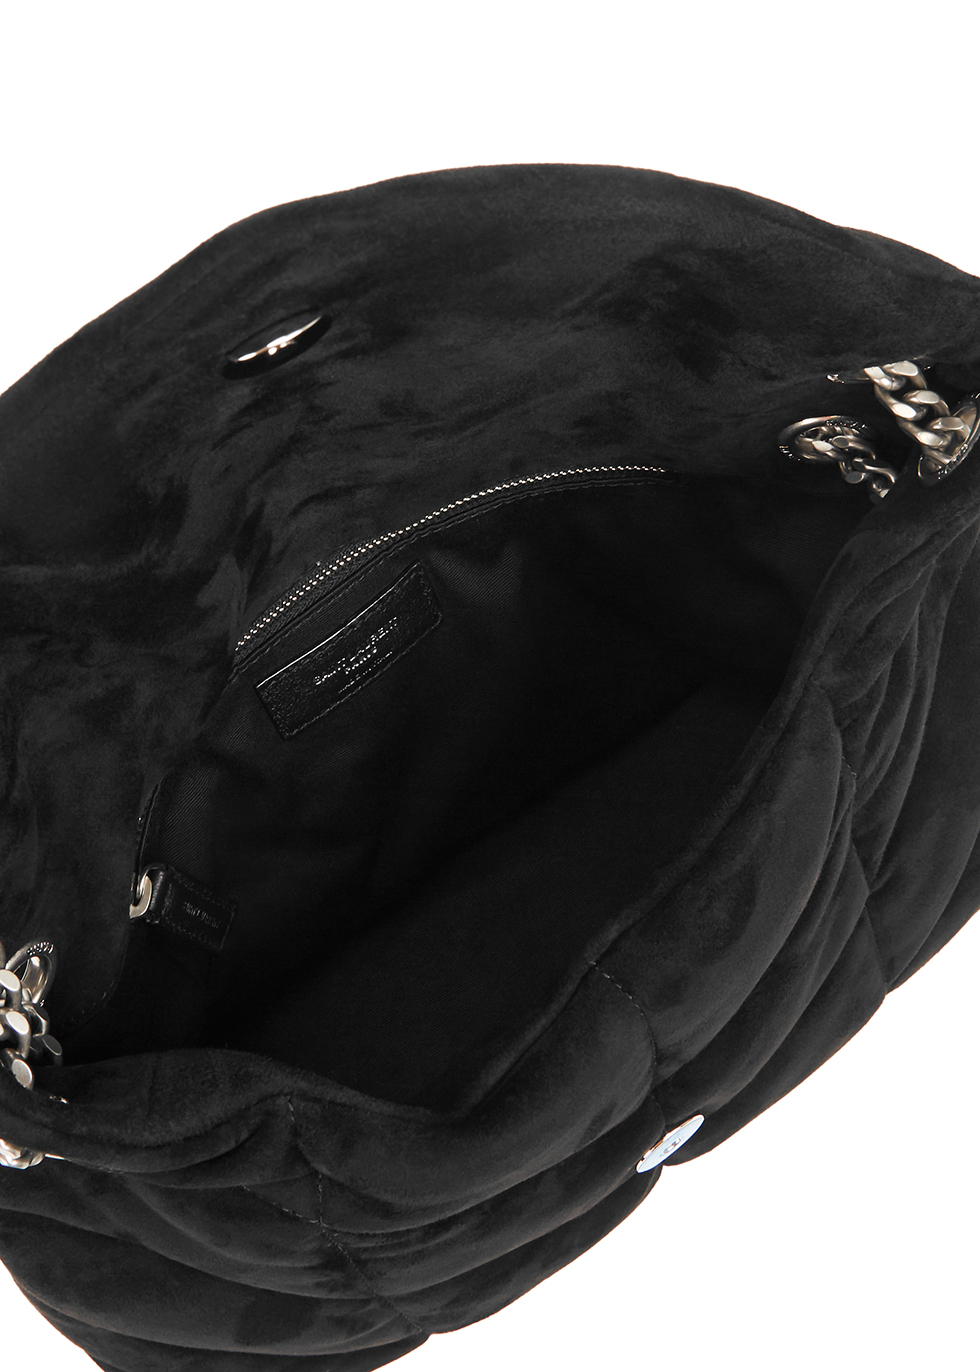 ysl black shoulder bag